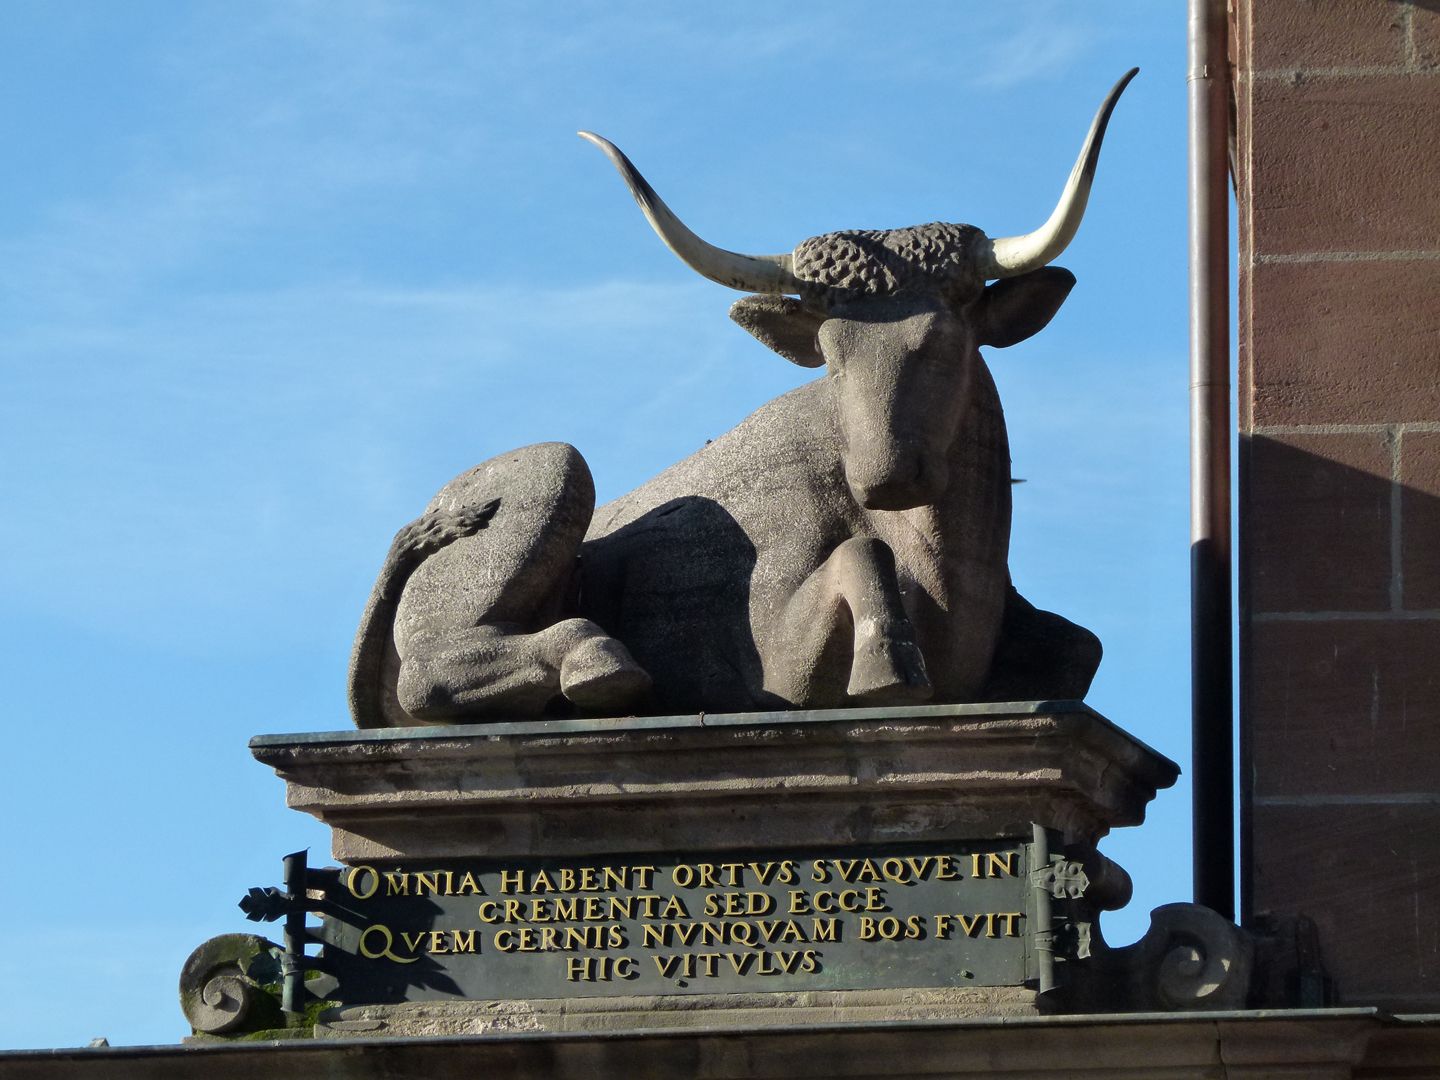 Portal mit Ochsen auf der Fleischbrücke Ochs mit Inschrift (aus dem Latein: Alles hat seinen Ursprung und Anfang, doch siehe der Ochse, den du hier erblickst, ist nie ein Kalb gewesen.)